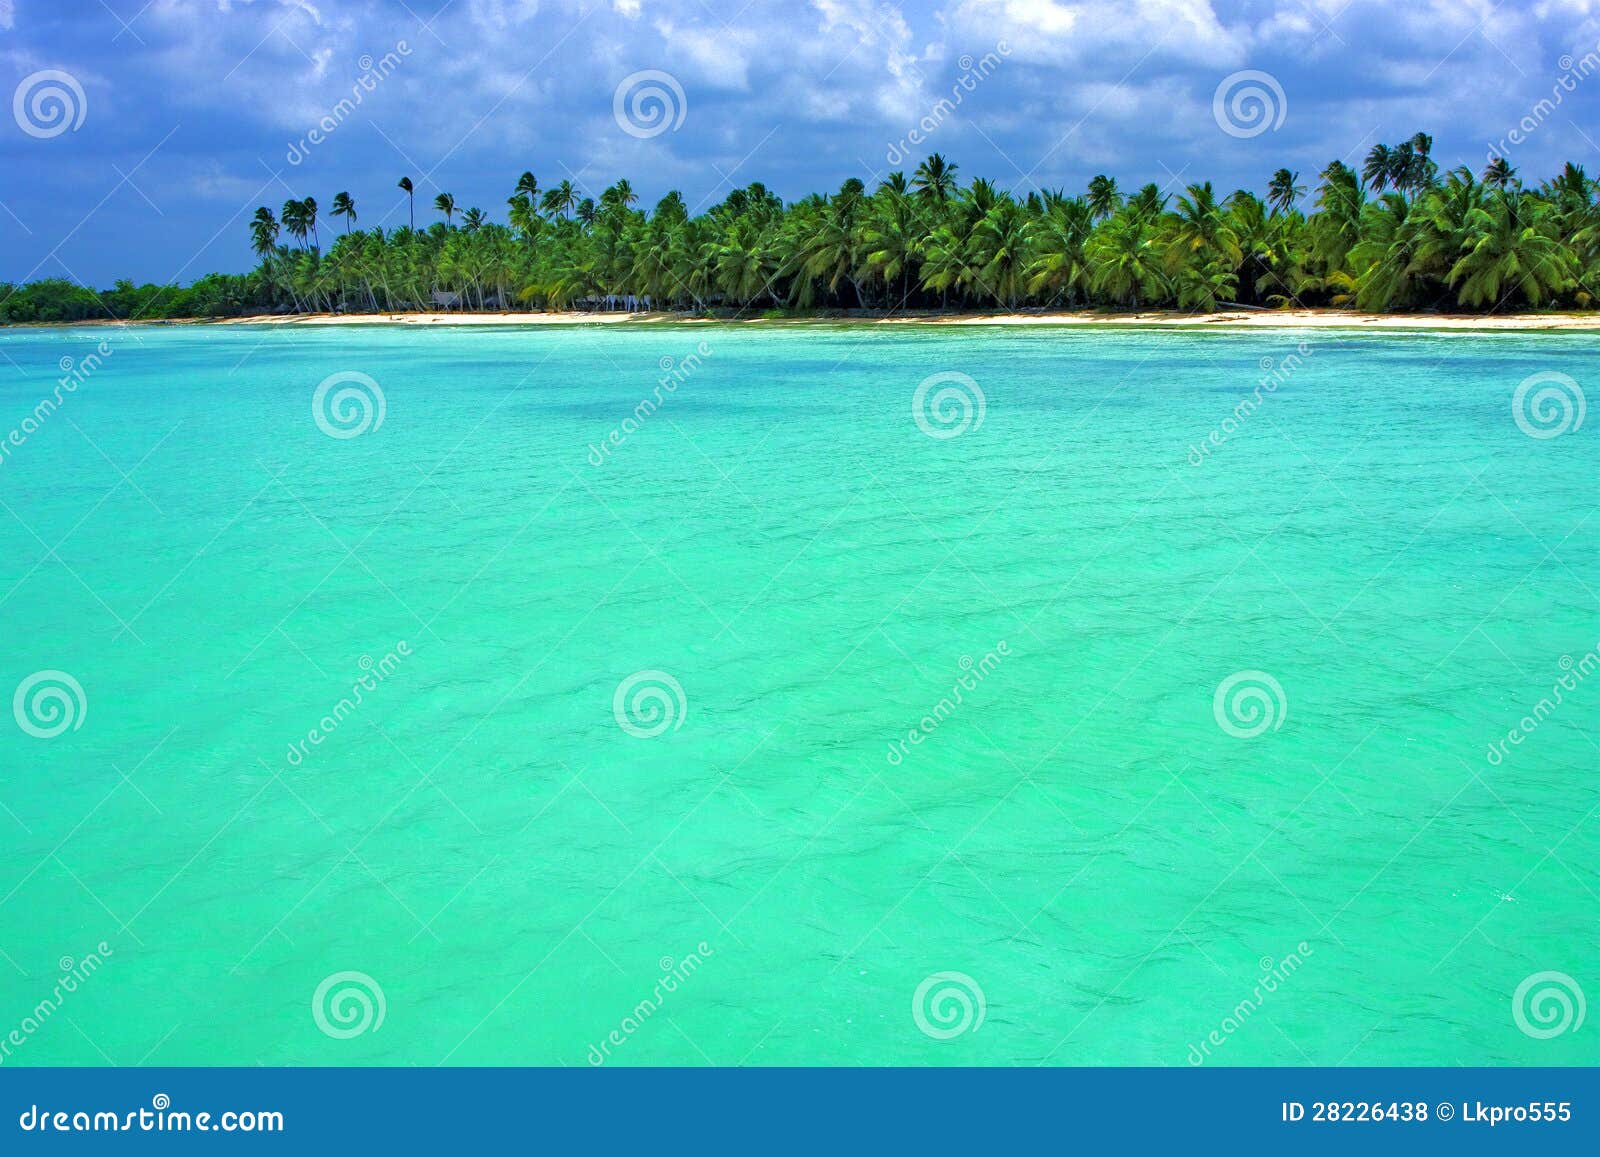 coastline in republica dominicana